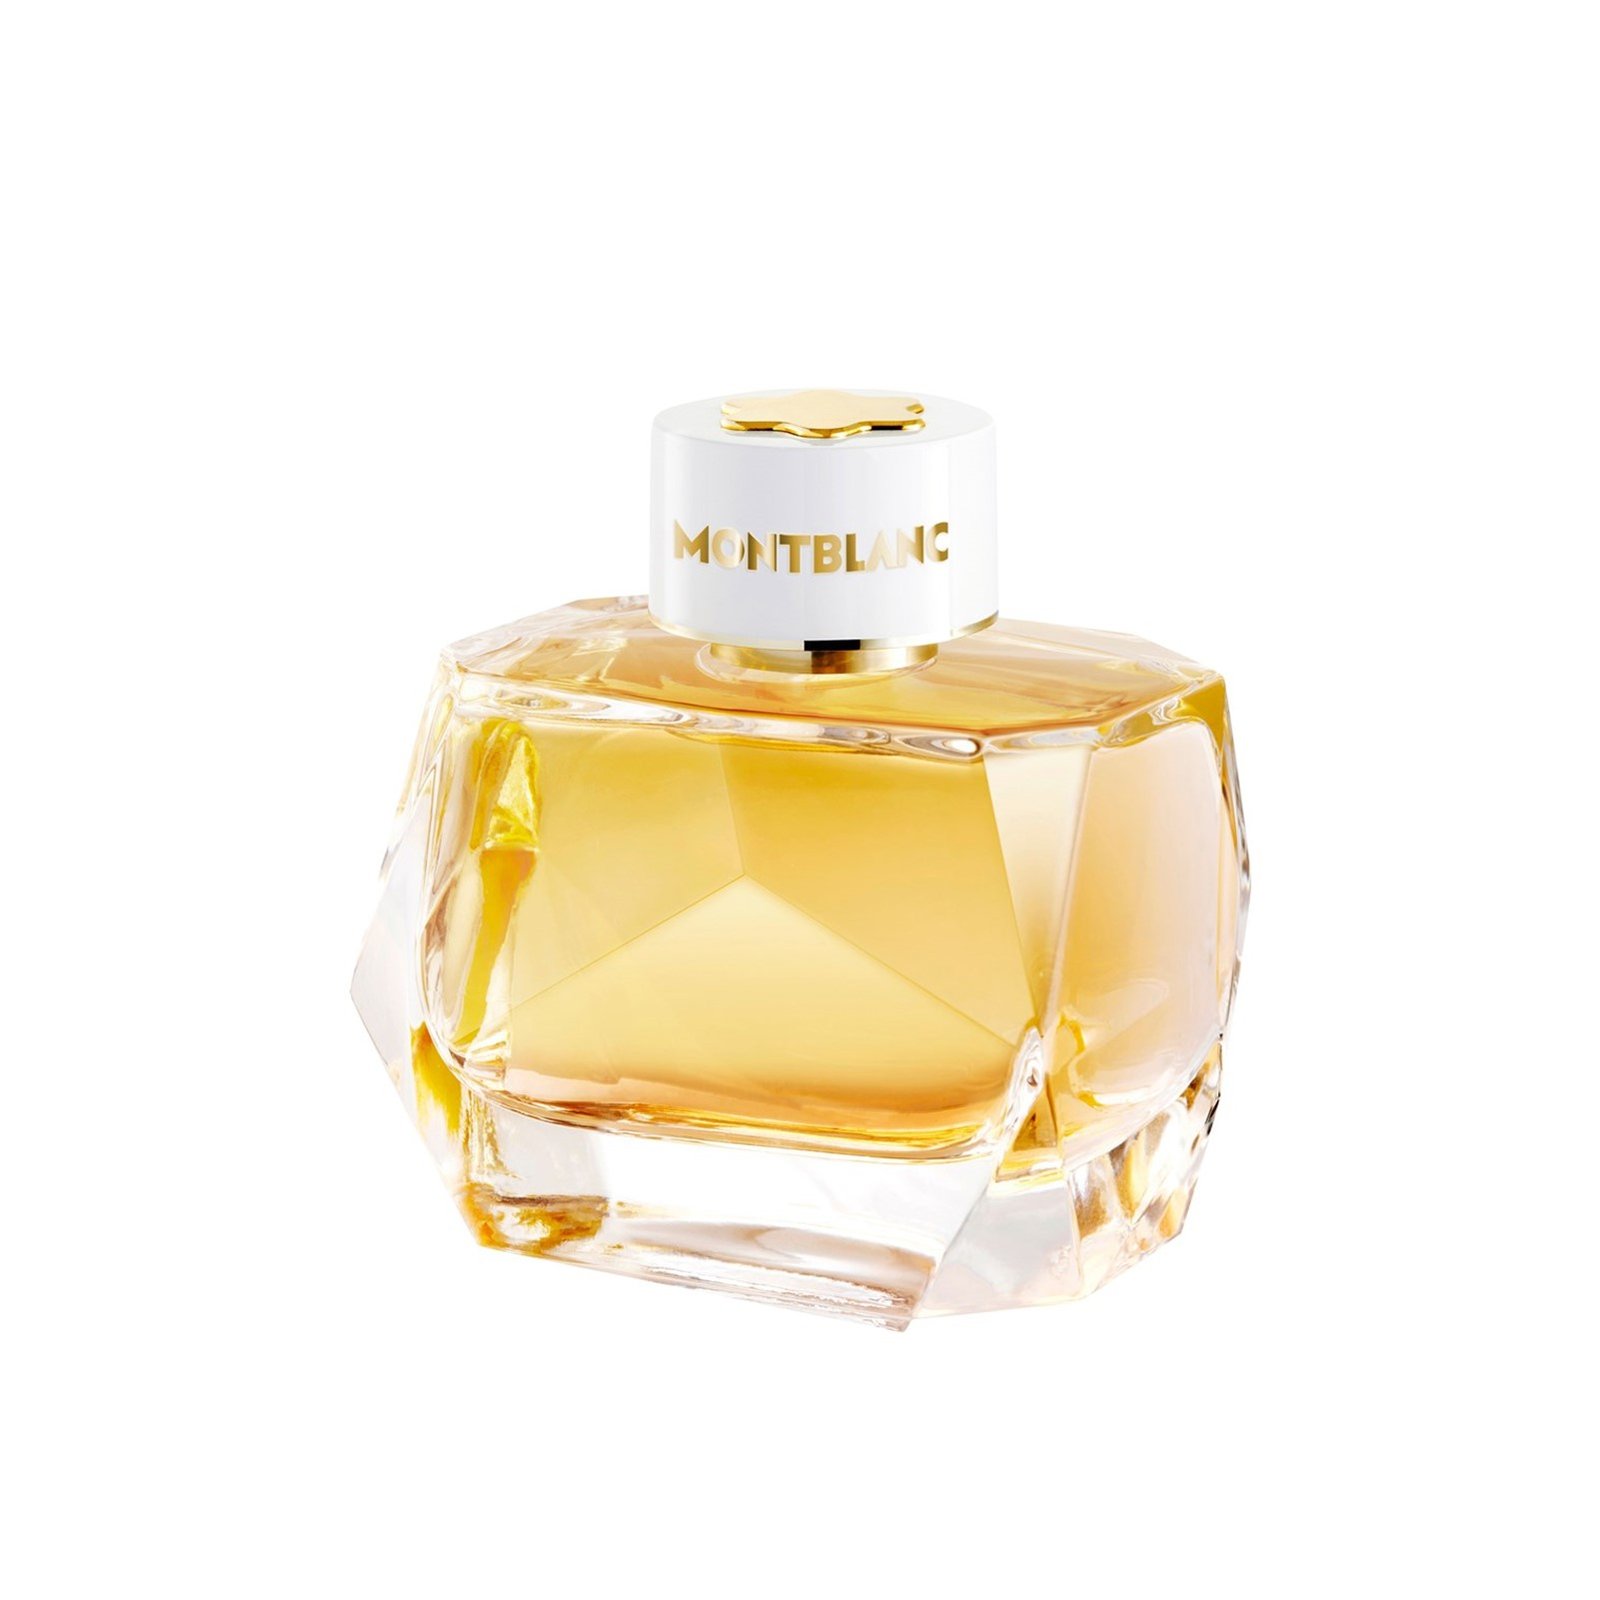 Montblanc Signature Absolue Eau de Parfum 90ml (3.0 fl oz)